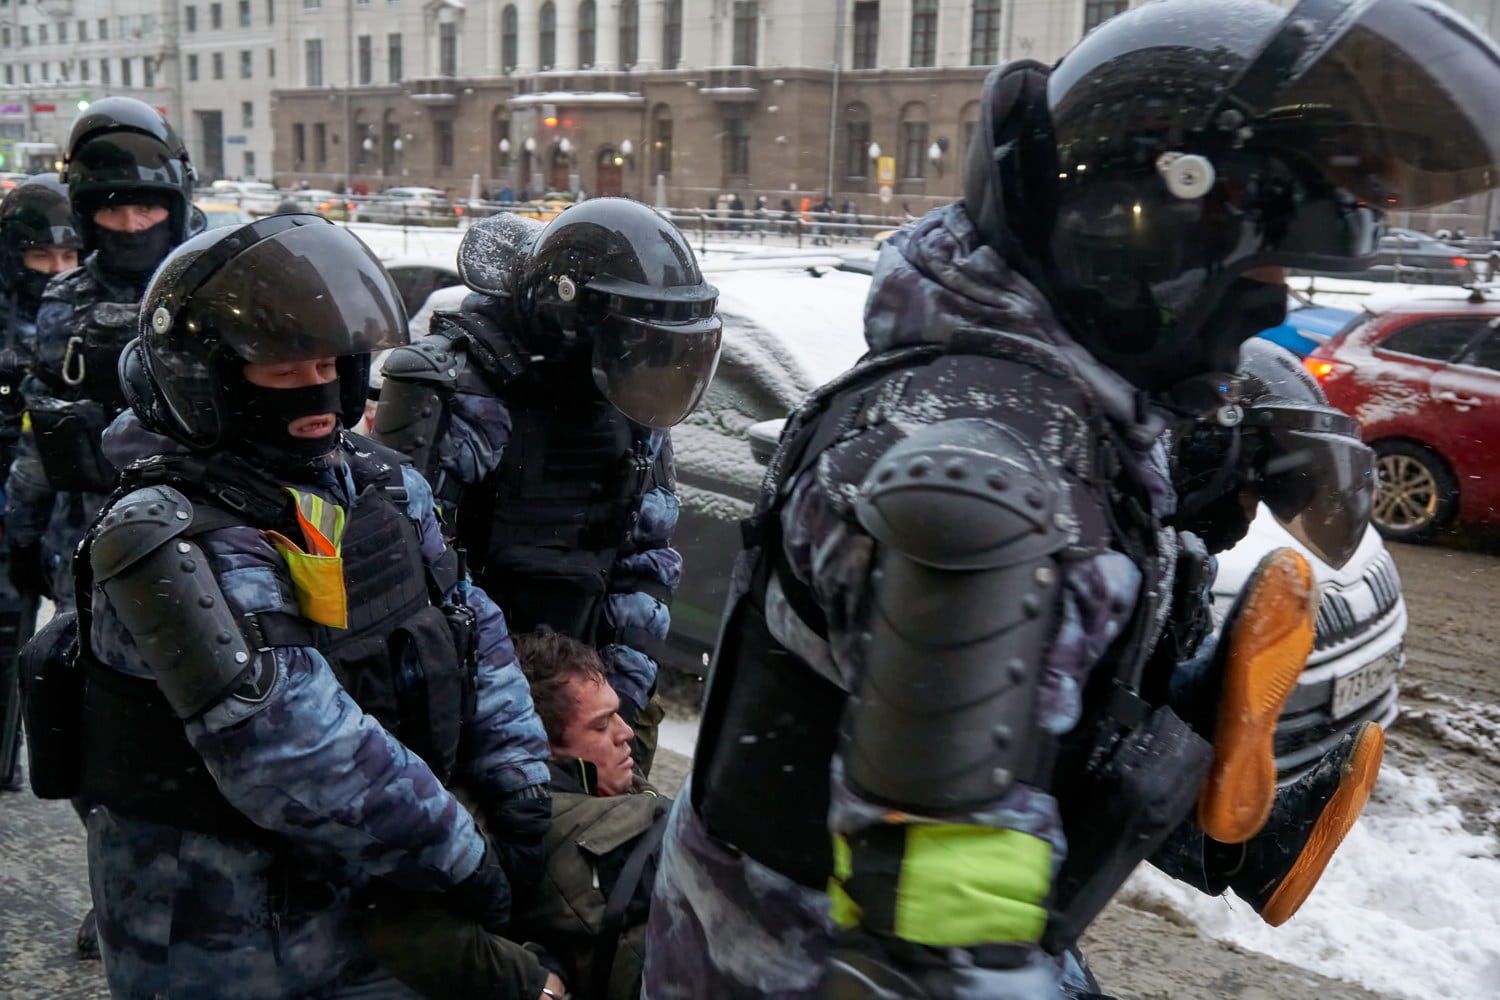 Guardie nazionali mentre arrestano un partecipante a una manifestazione a sostegno del leader dell'opposizione Alexei Navalny nel febbraio 2021. Immagine ripresa da Flickr/Michał Siergiejevicz in licenza CC